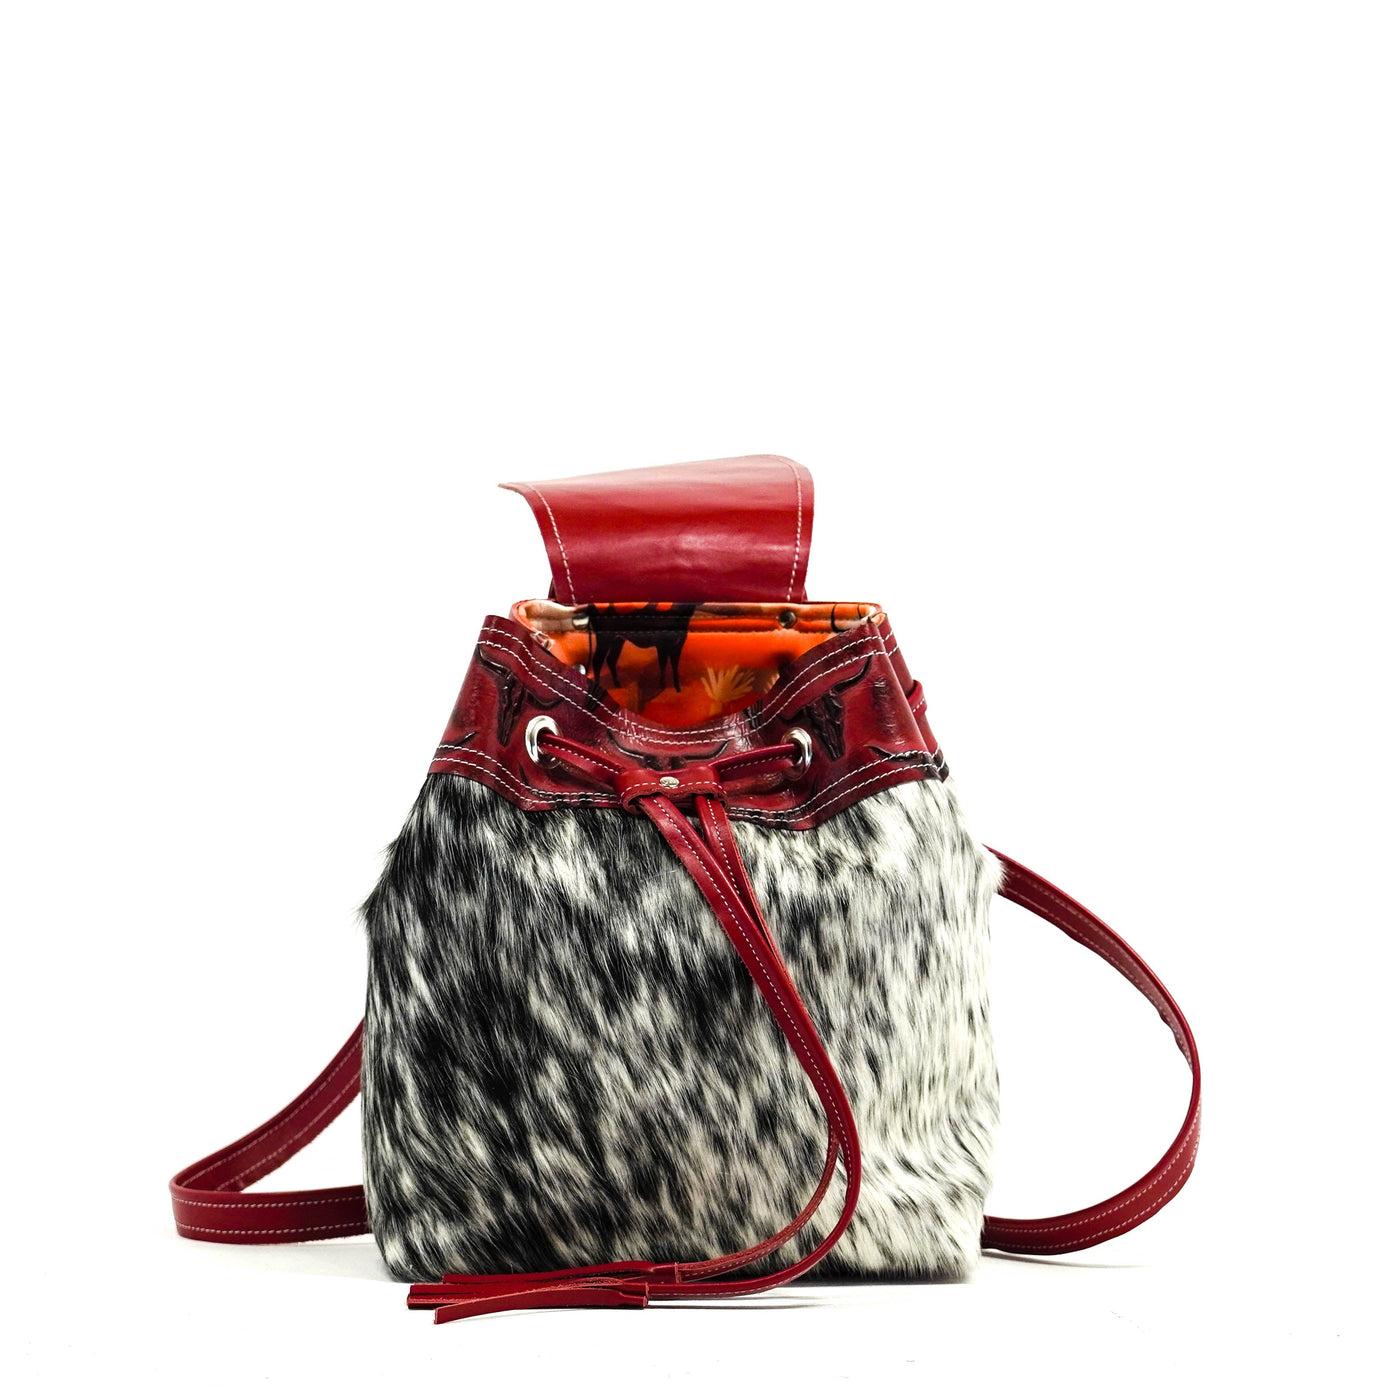 Mini Kelsea Backpack - Salt & Pepper w/ Burgundy Skulls-Mini Kelsea Backpack-Western-Cowhide-Bags-Handmade-Products-Gifts-Dancing Cactus Designs